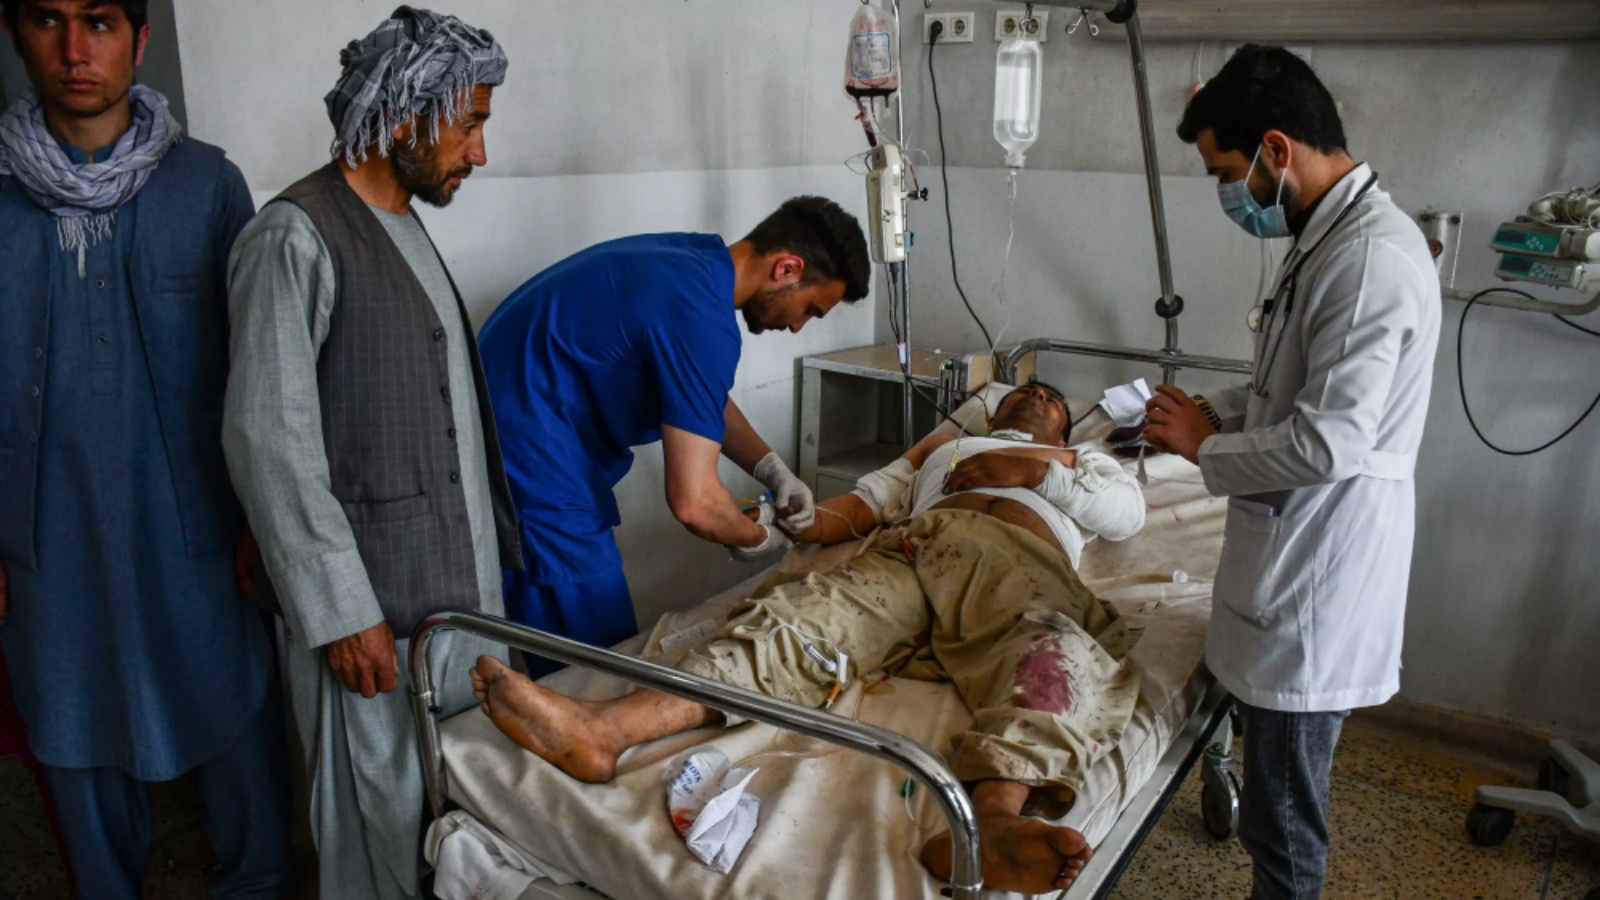 أفغاني أصيب بجروح في تفجير استهدف مسجداً للشيعة في شمال أفغانستان يتلقى العلاج في مستشفى في 21 أبريل 2021